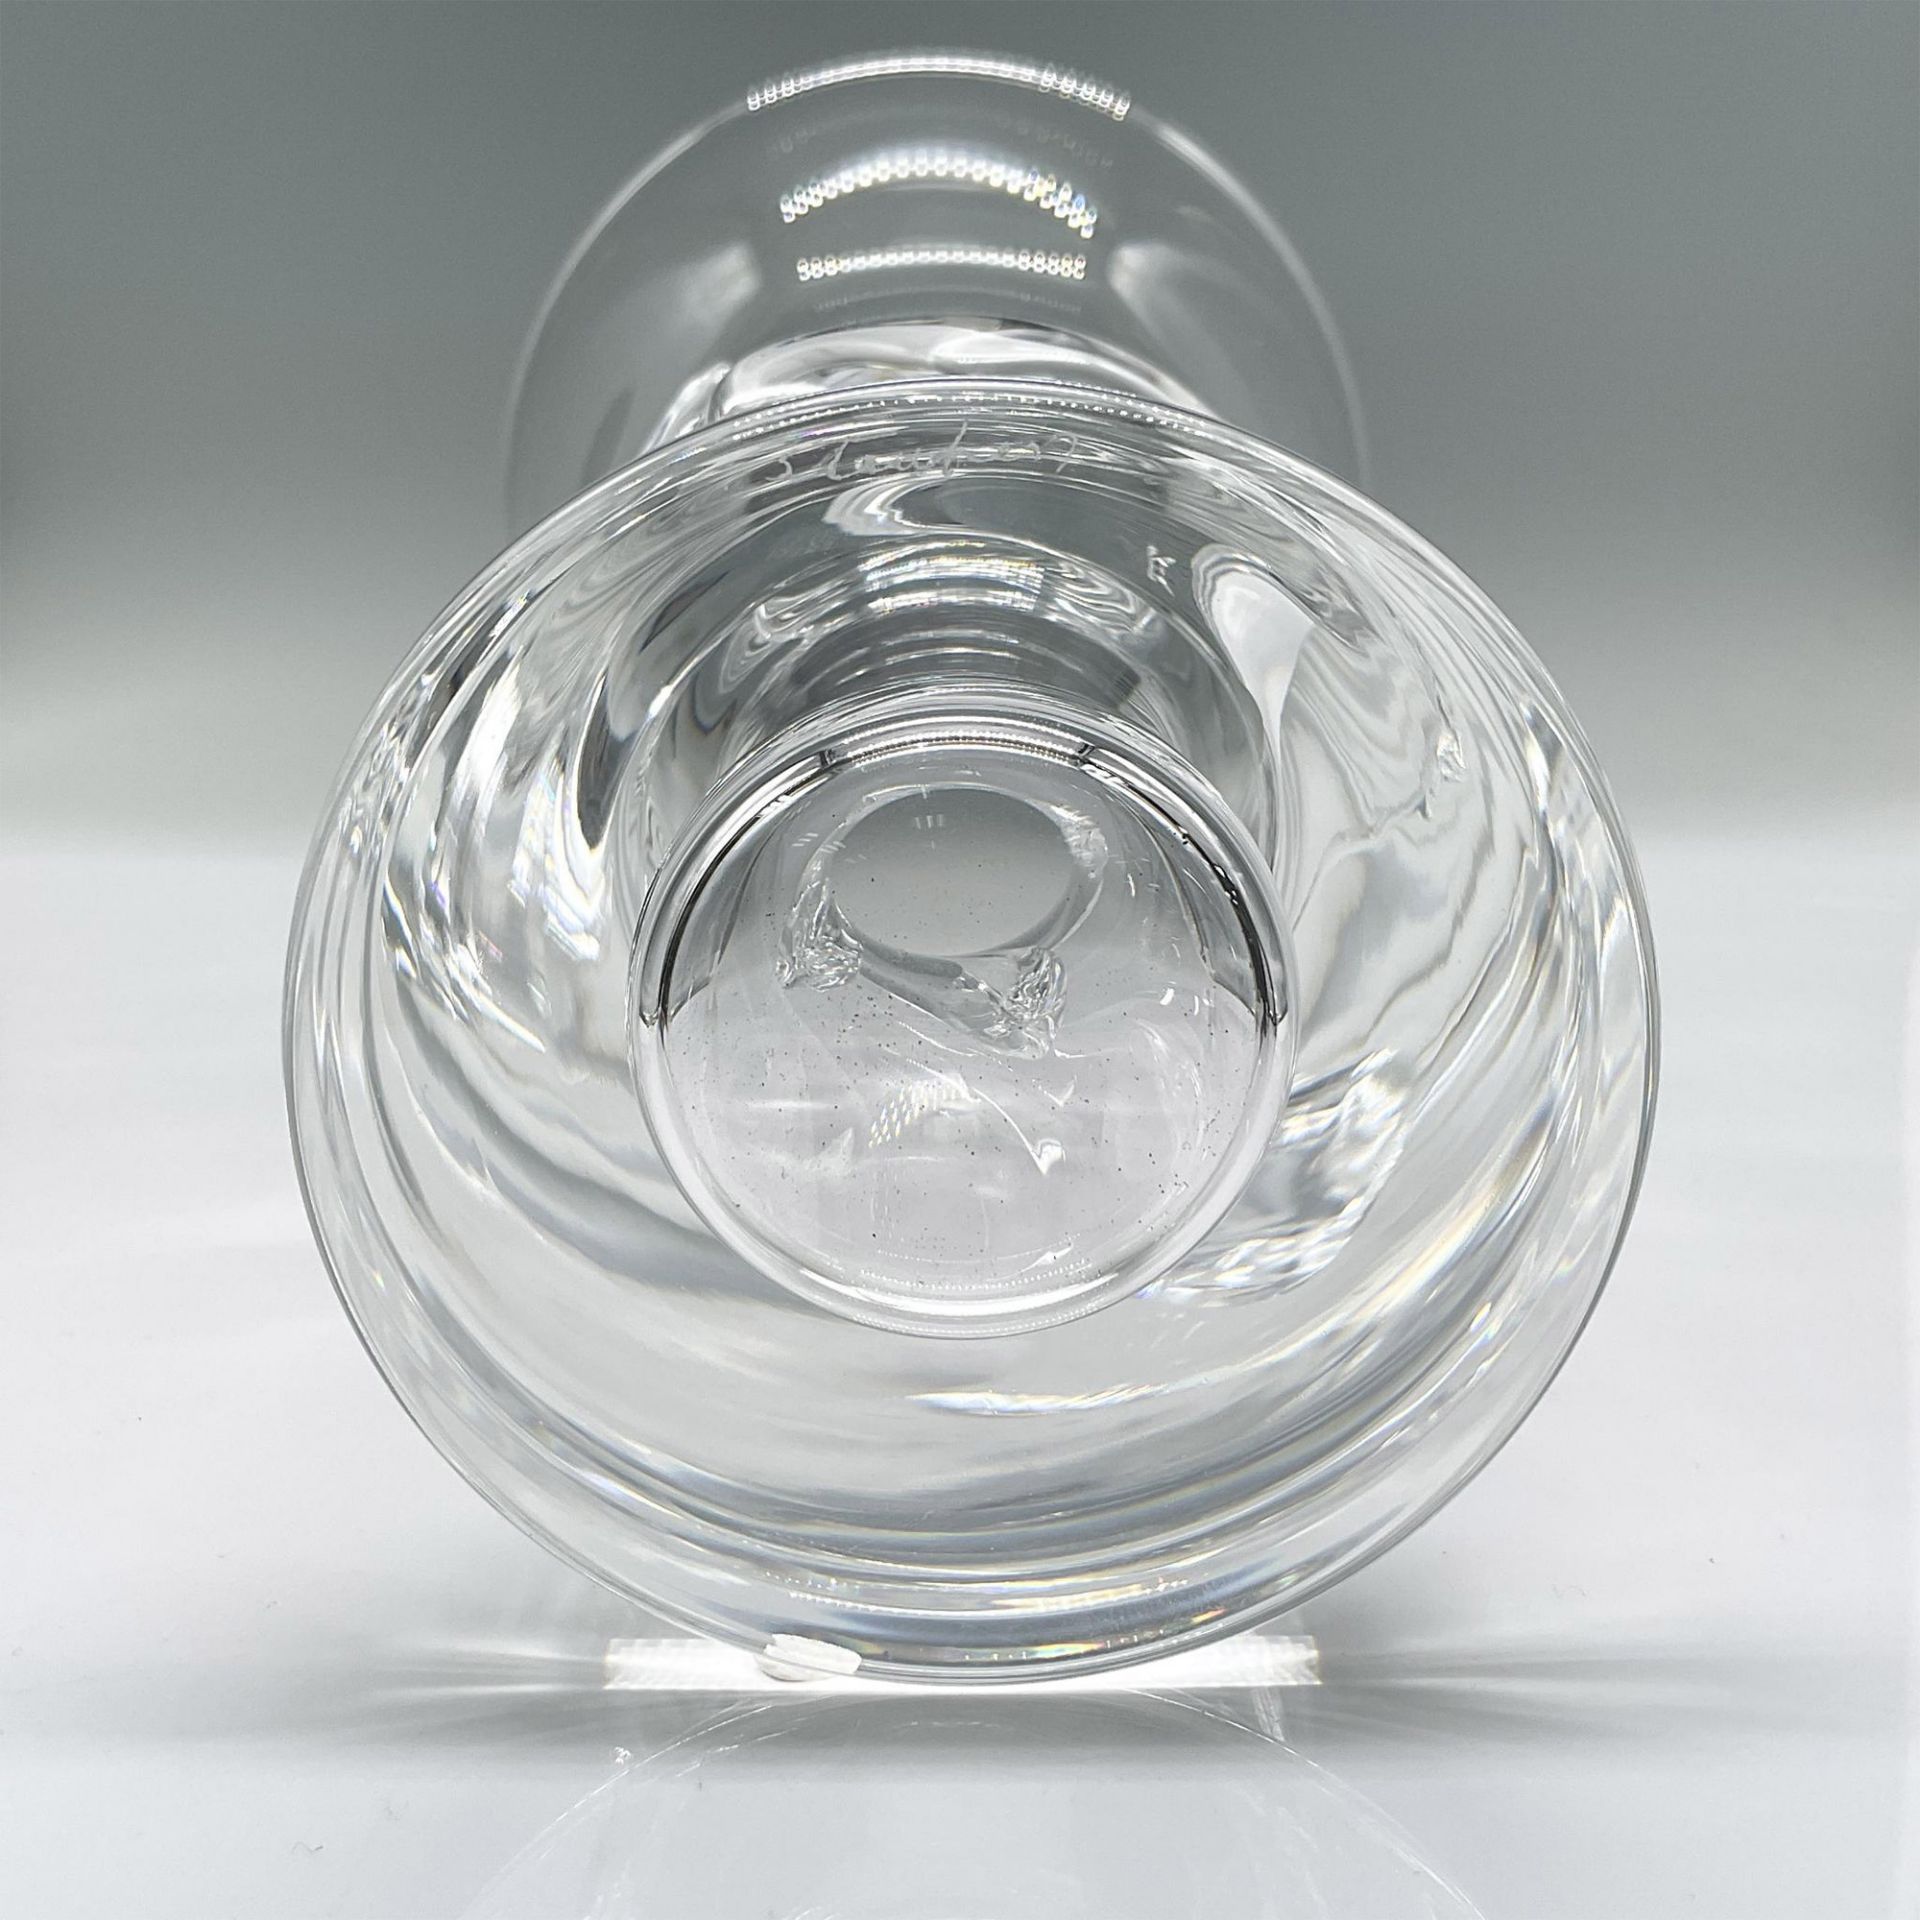 Steuben Crystal Vase, 8090 - Image 3 of 3